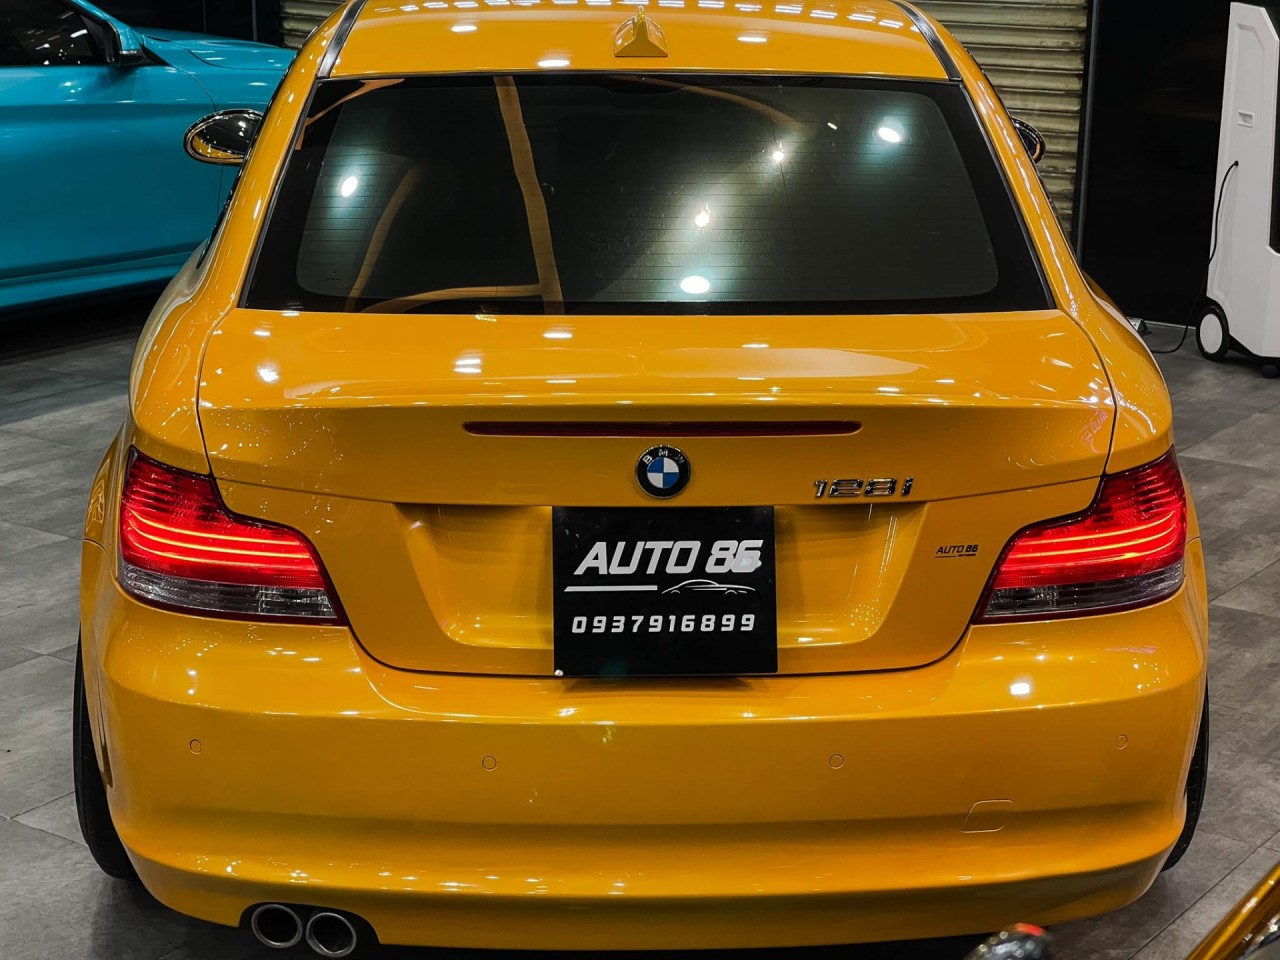 Hàng hiếm 'BMW128i Coupe' lên sàn với giá 790 triệu đồng